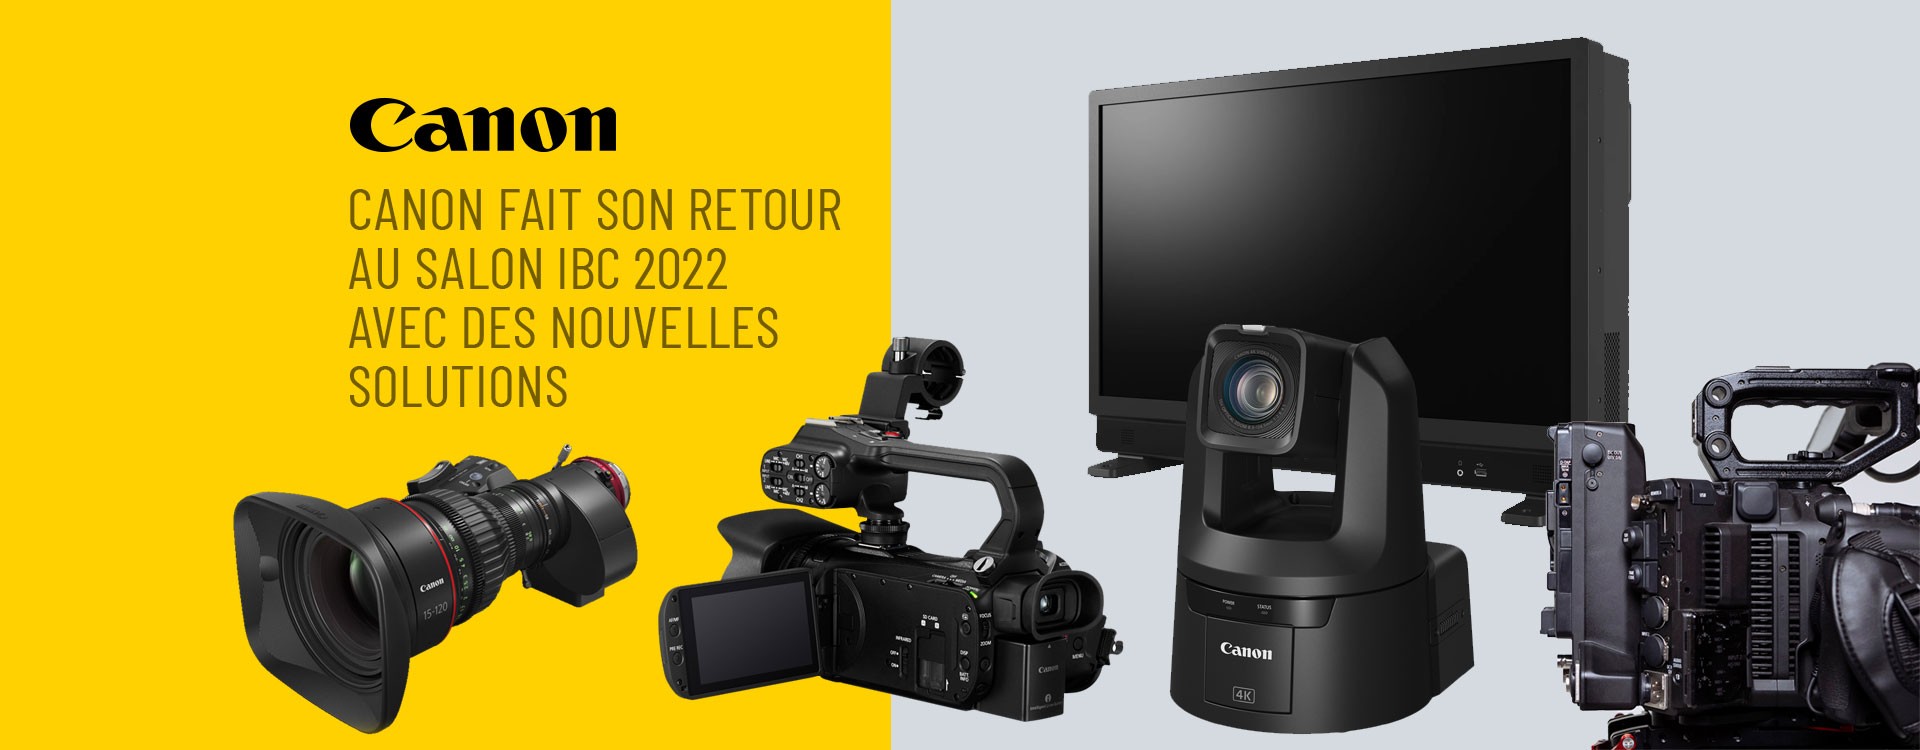 Canon fait son retour au salon IBC 2022 avec de nouvelles solutions